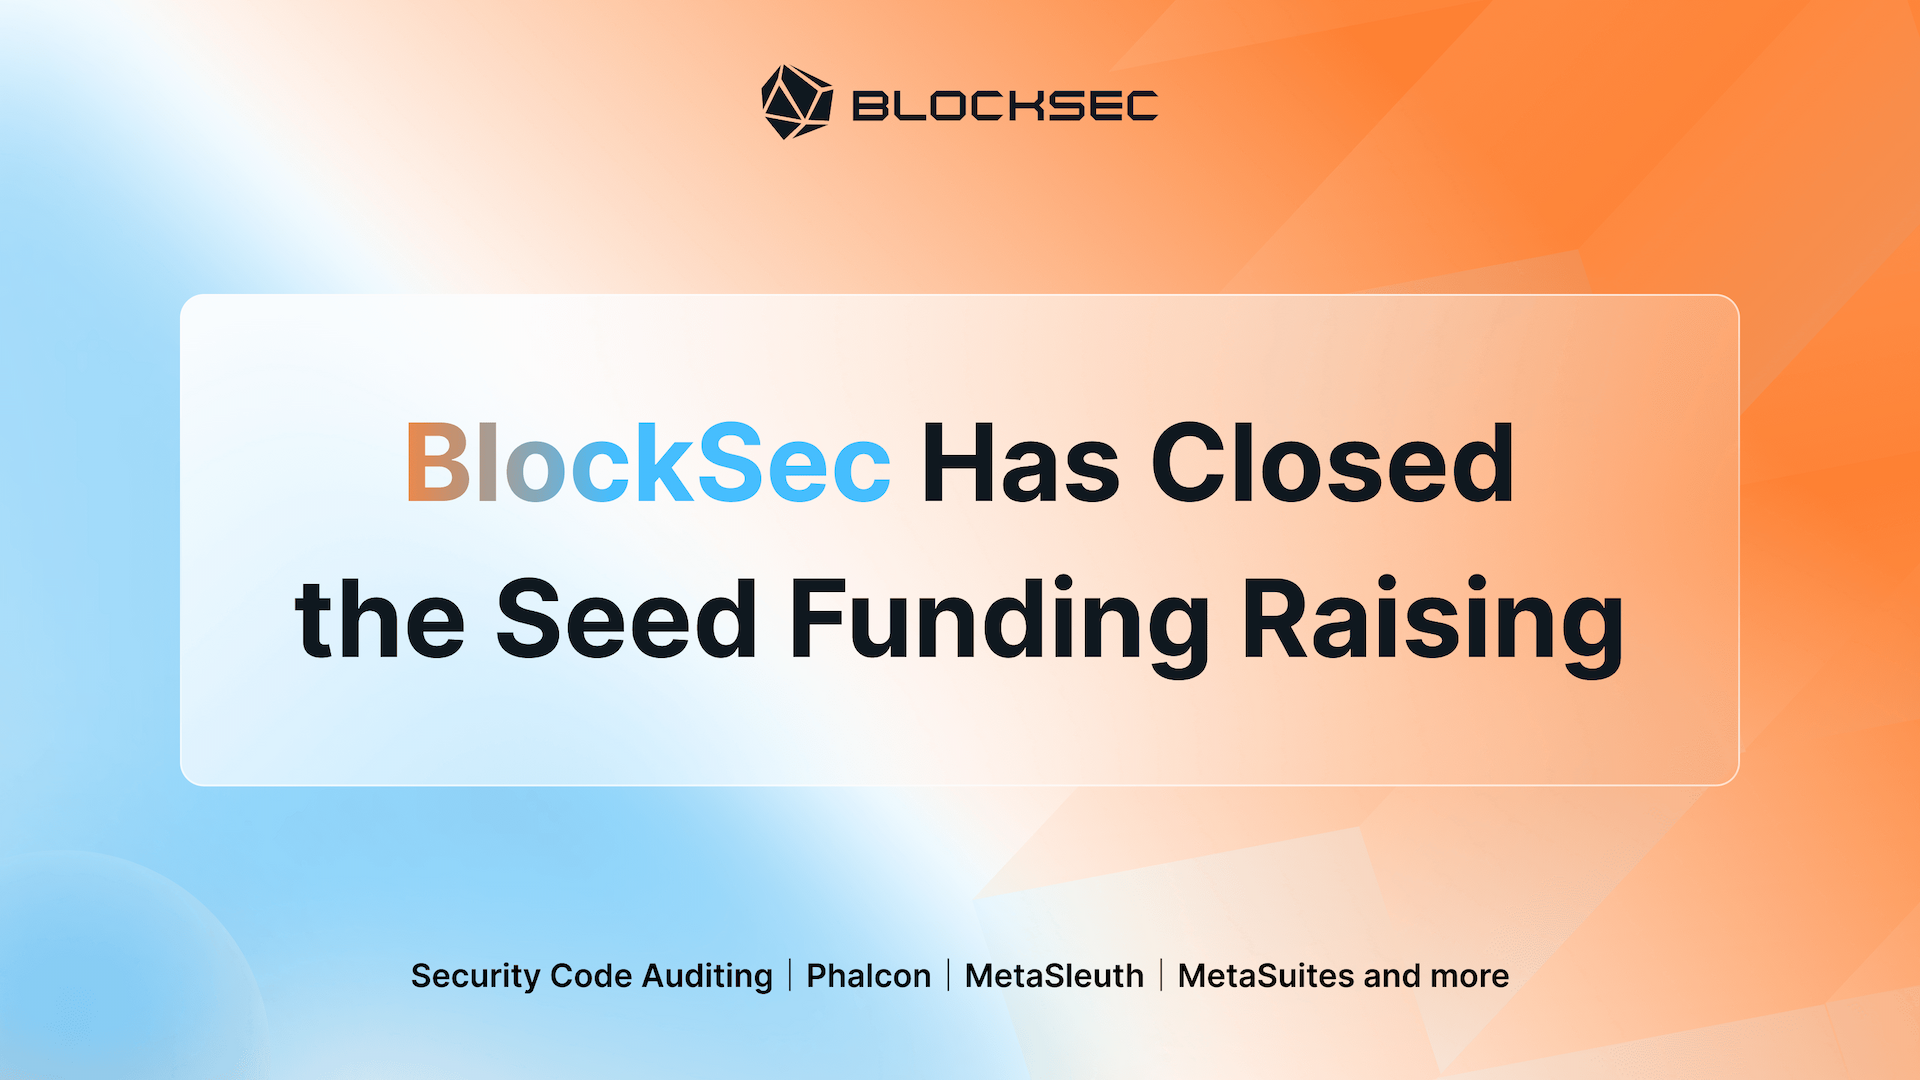 BlockSec Has Closed the Seed Funding Raising